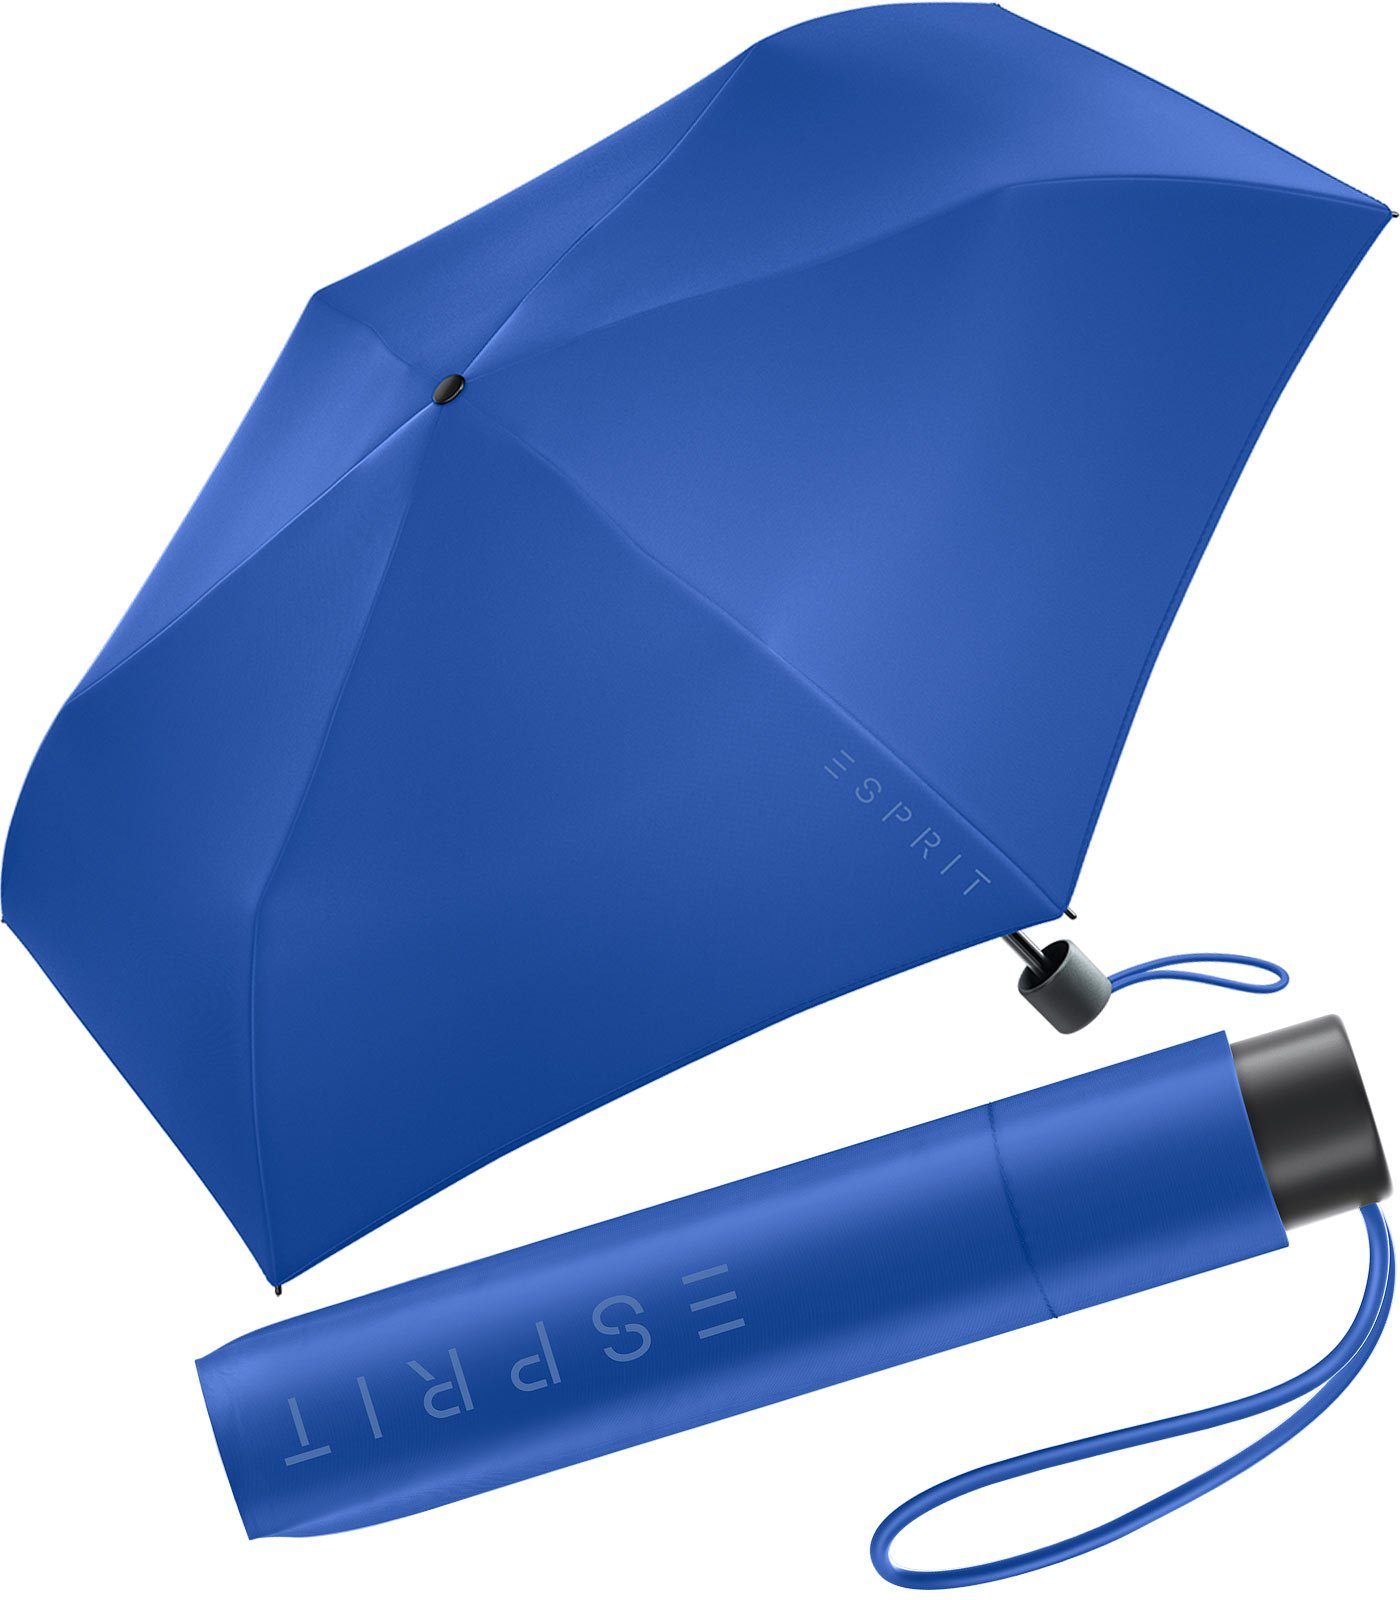 Esprit Langregenschirm Mini Regenschirm Damen Slimline HW 2023, in den neuen Trendfarben, beaucoup blue blau | Stockschirme